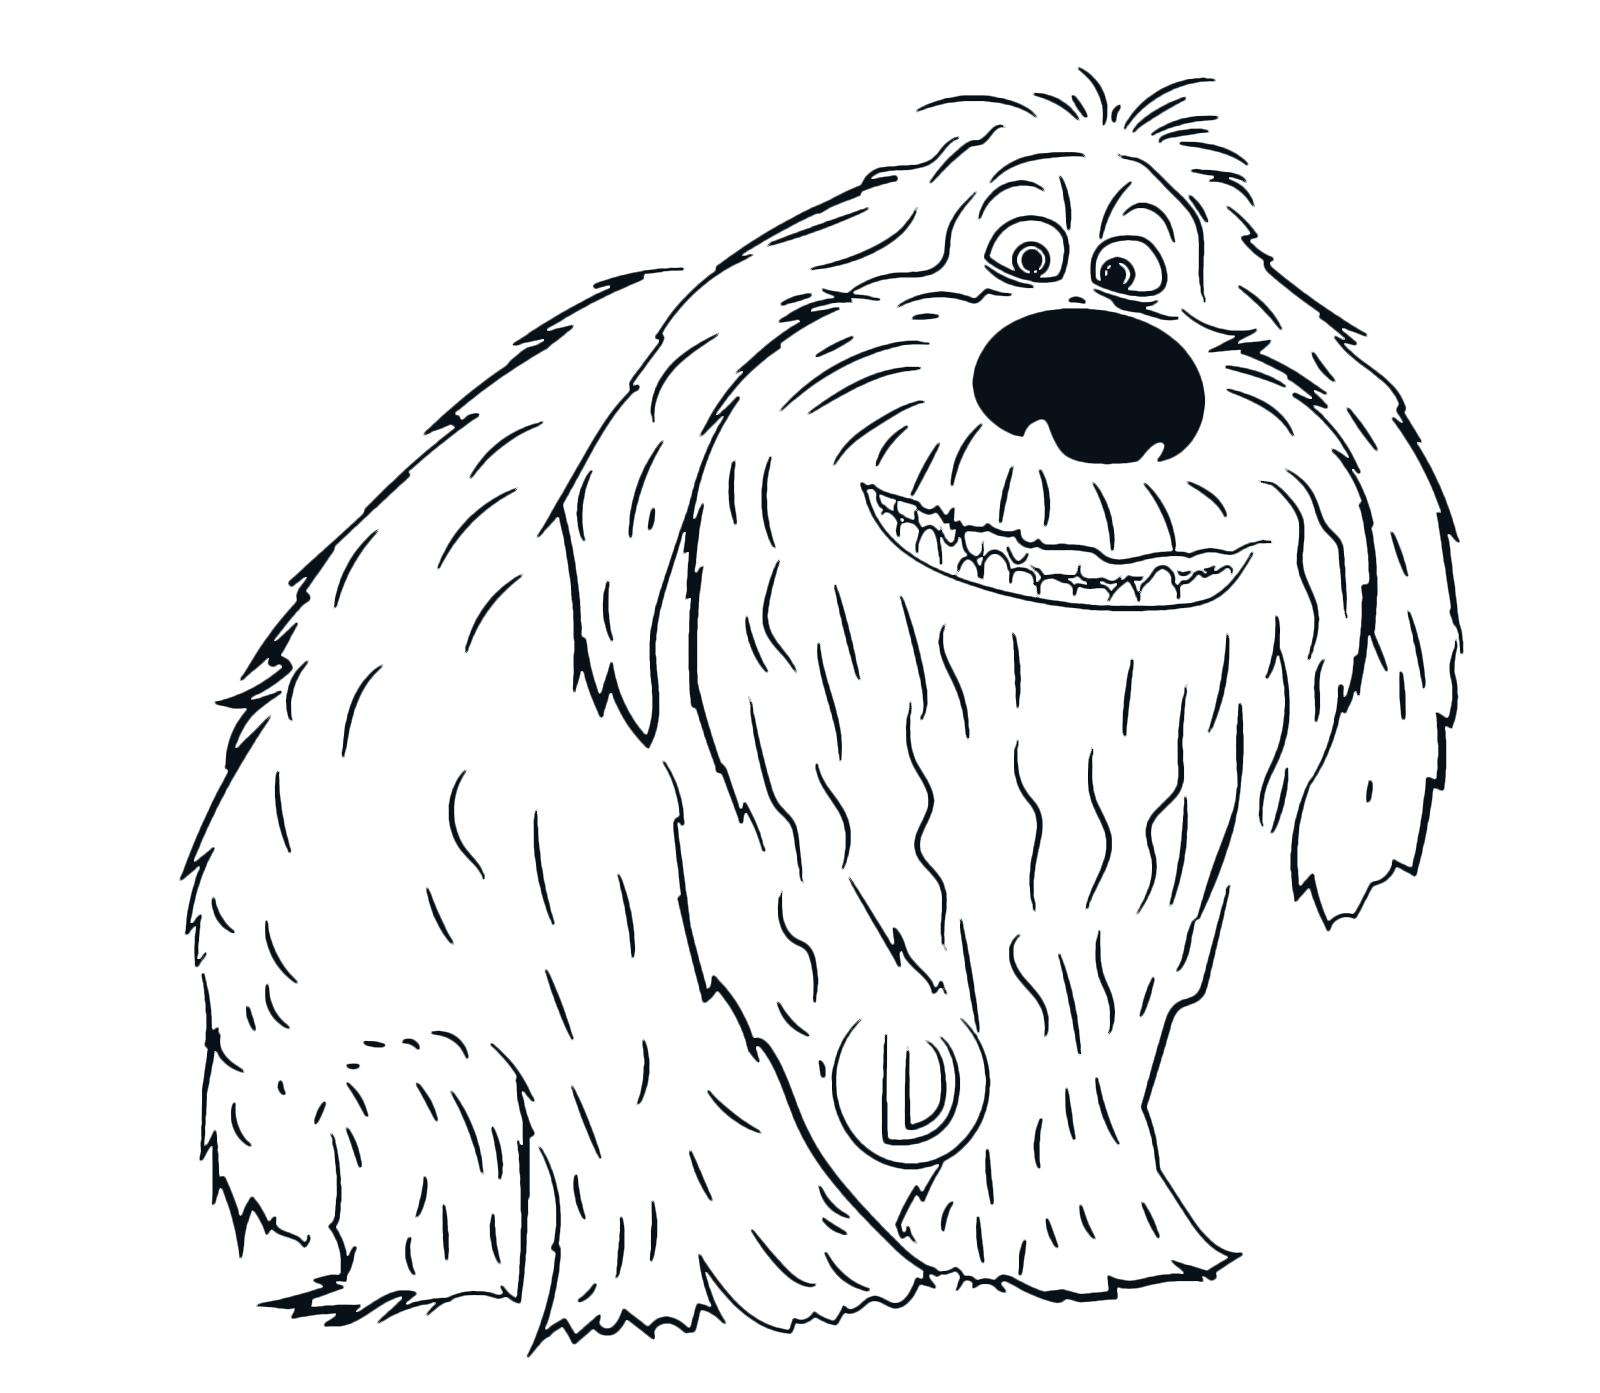 Divertiti a stampare e a colorare i disegni del film d animazione Pets Vita da animali Max e Duke ti aspettano per vivere assieme ai loro amici